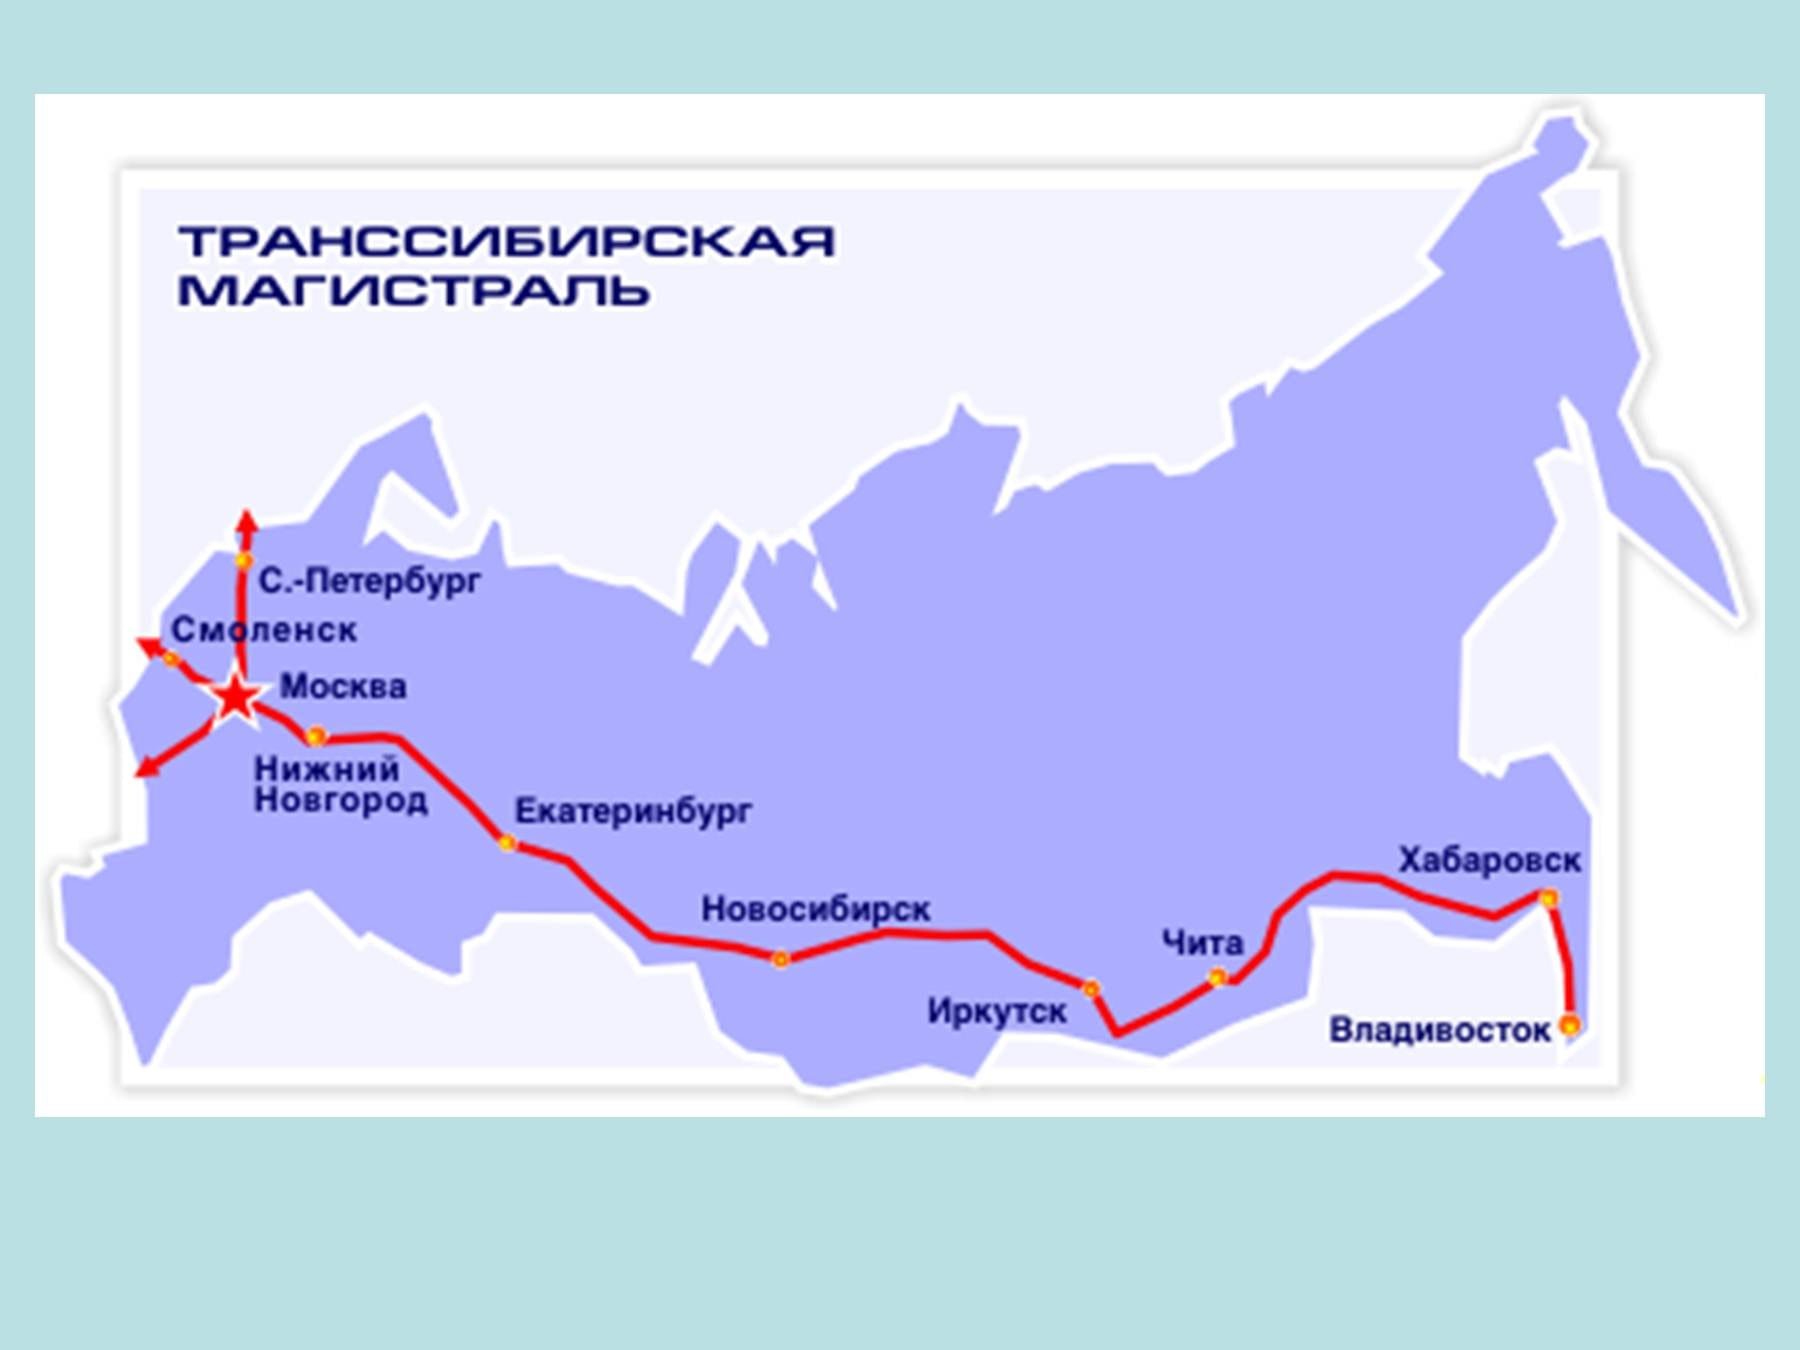 Транссибирская магистраль через какие крупные города. Транссибирская магистраль города. Транссибирская магистраль протяженность. Транссиб Железнодорожная магистраль. Транссибирская Железнодорожная магистраль на карте России 19 века.